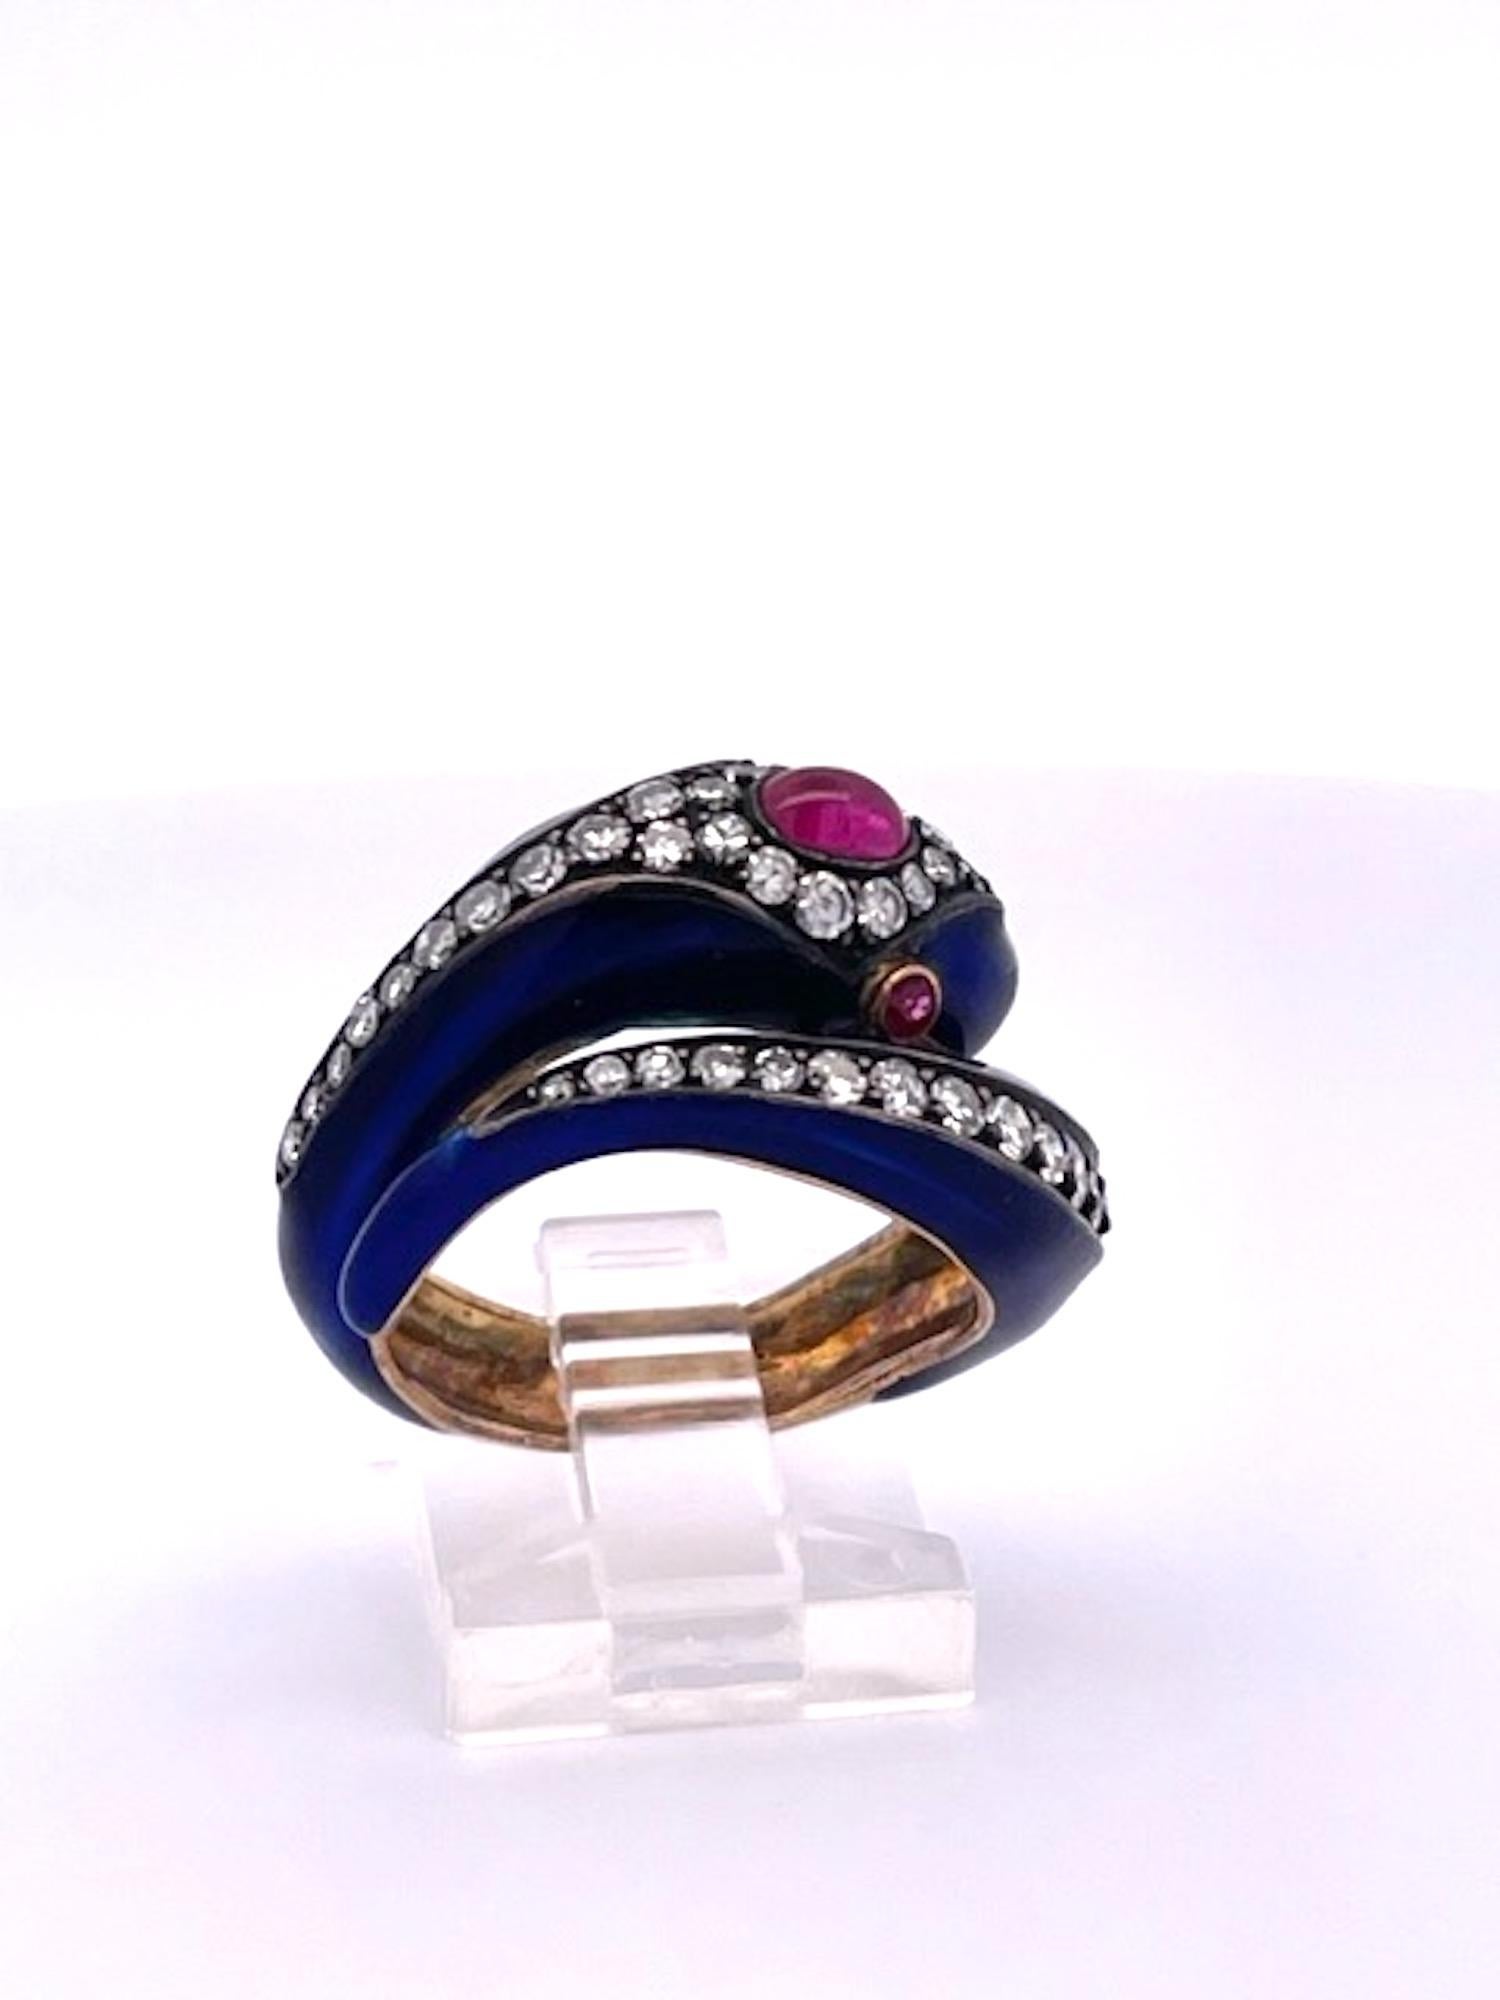 Artisan This 18K Snake Ring Cobalt Blue Enamel Rubies Diamonds  For Sale